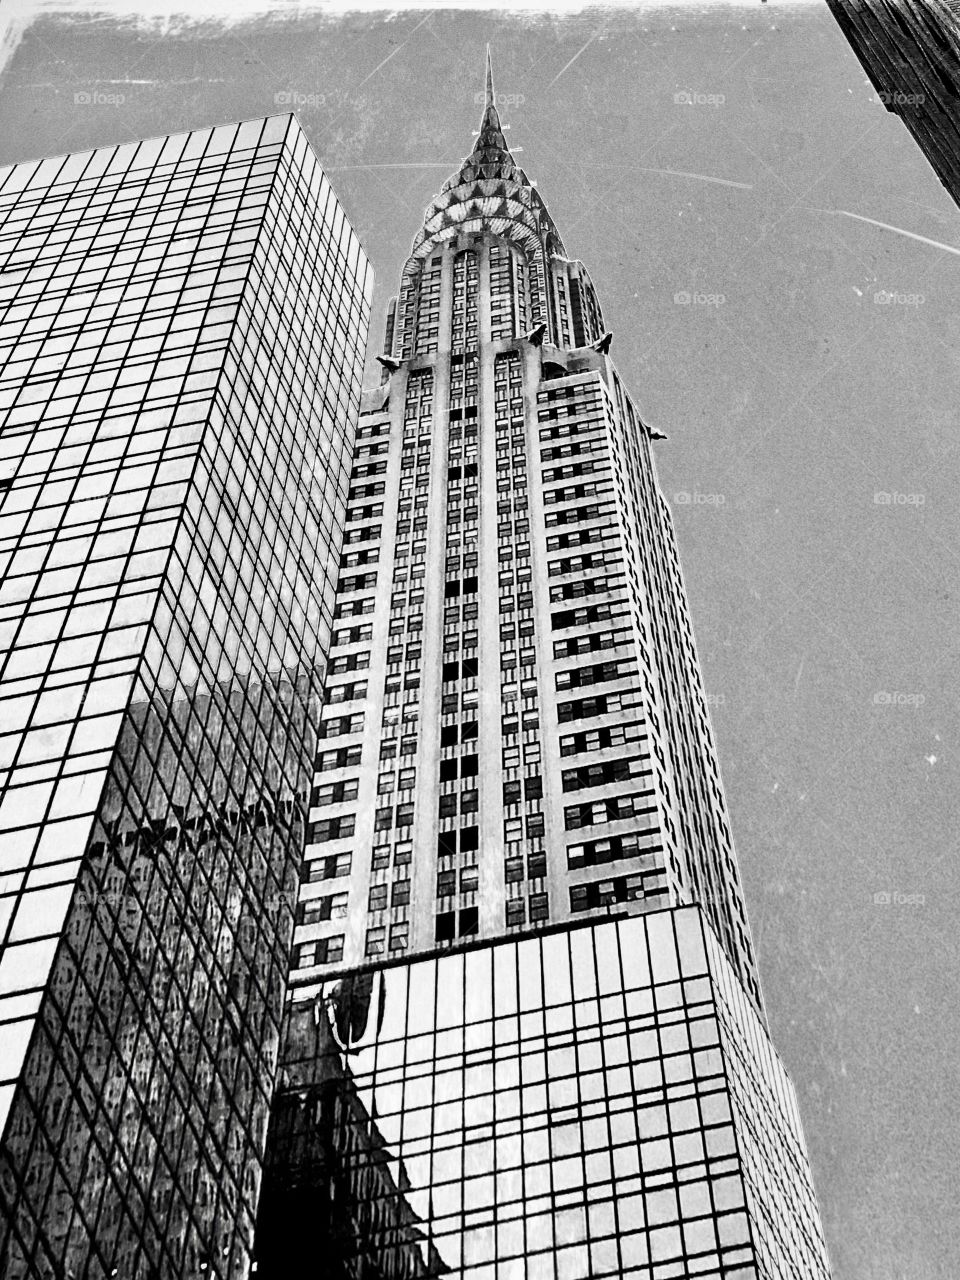 Chrysler building in New York City 